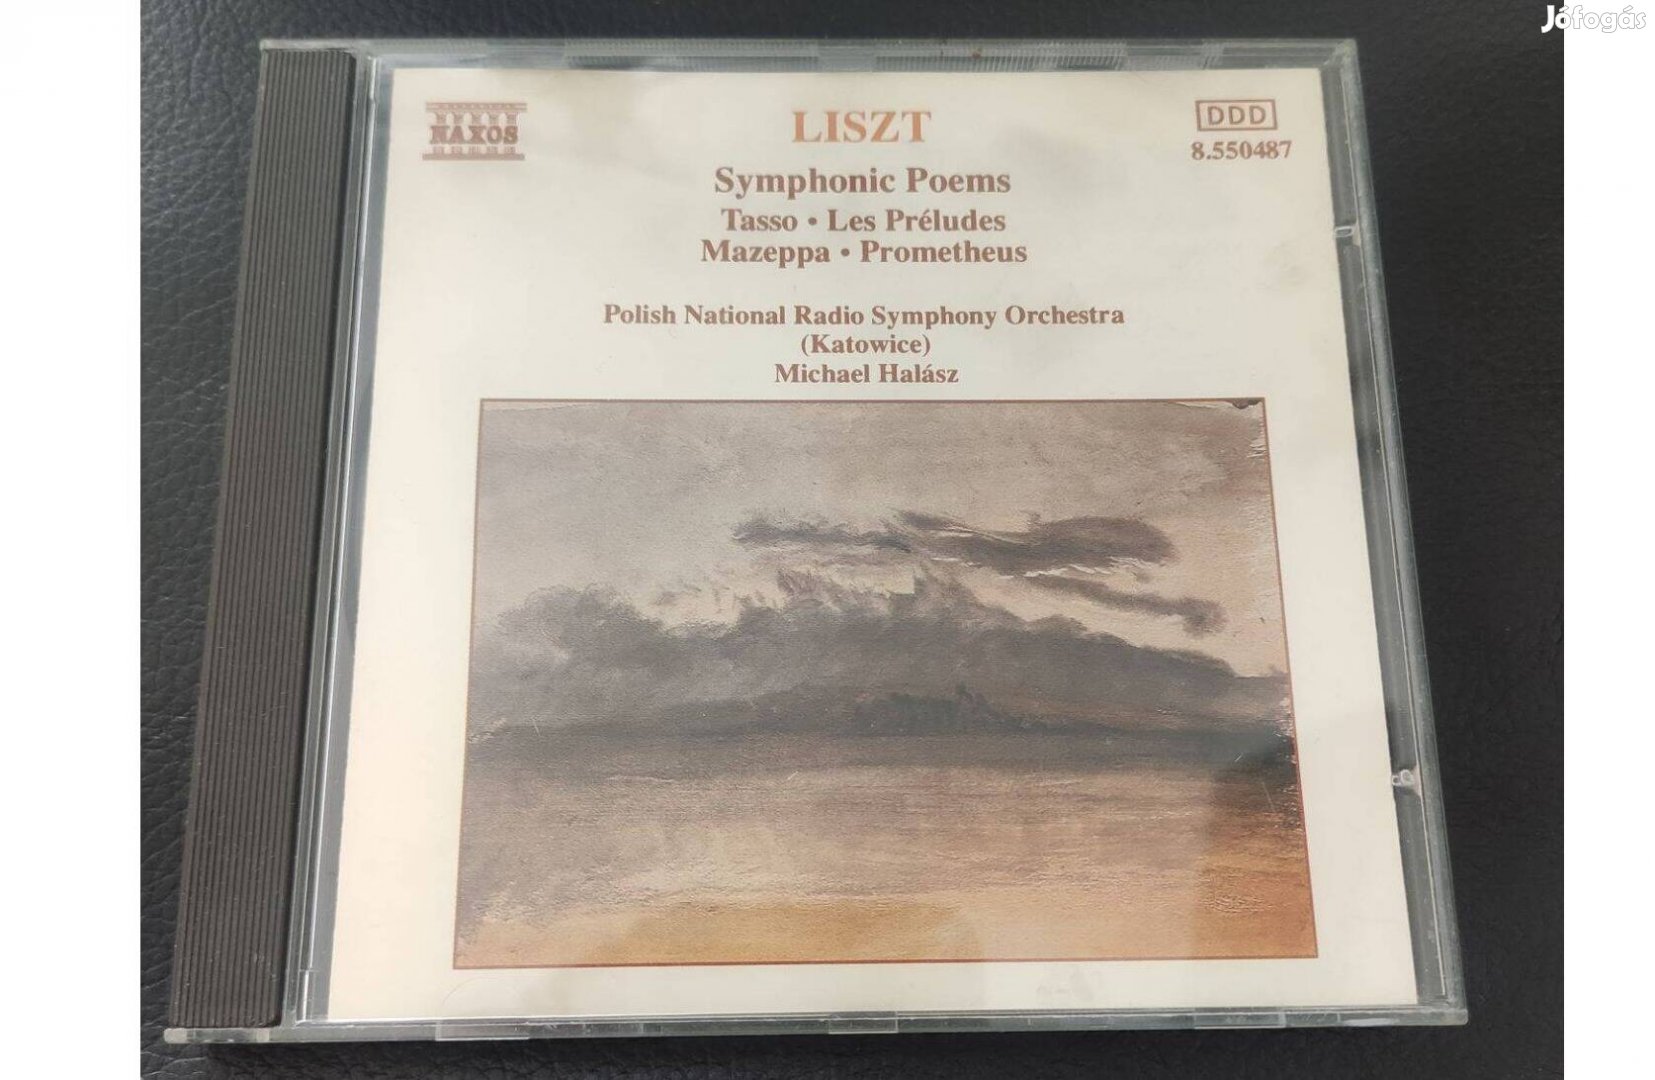 Liszt Szimfonikus költemények CD Tasso,Les Preludes,Mazeppa,Prometheus